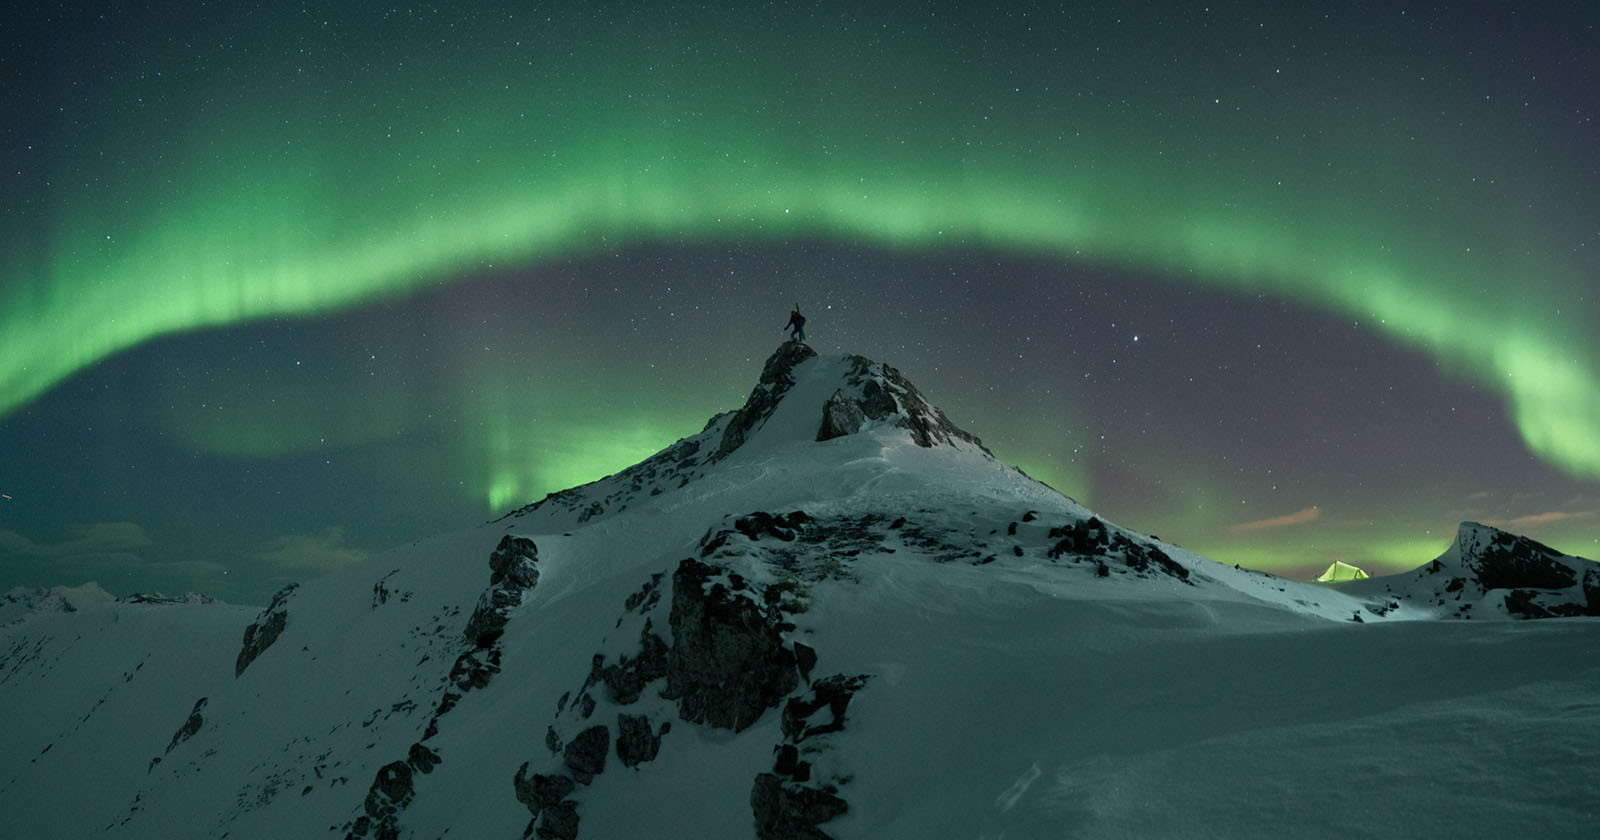  photographer captures epic photos skier under northern 